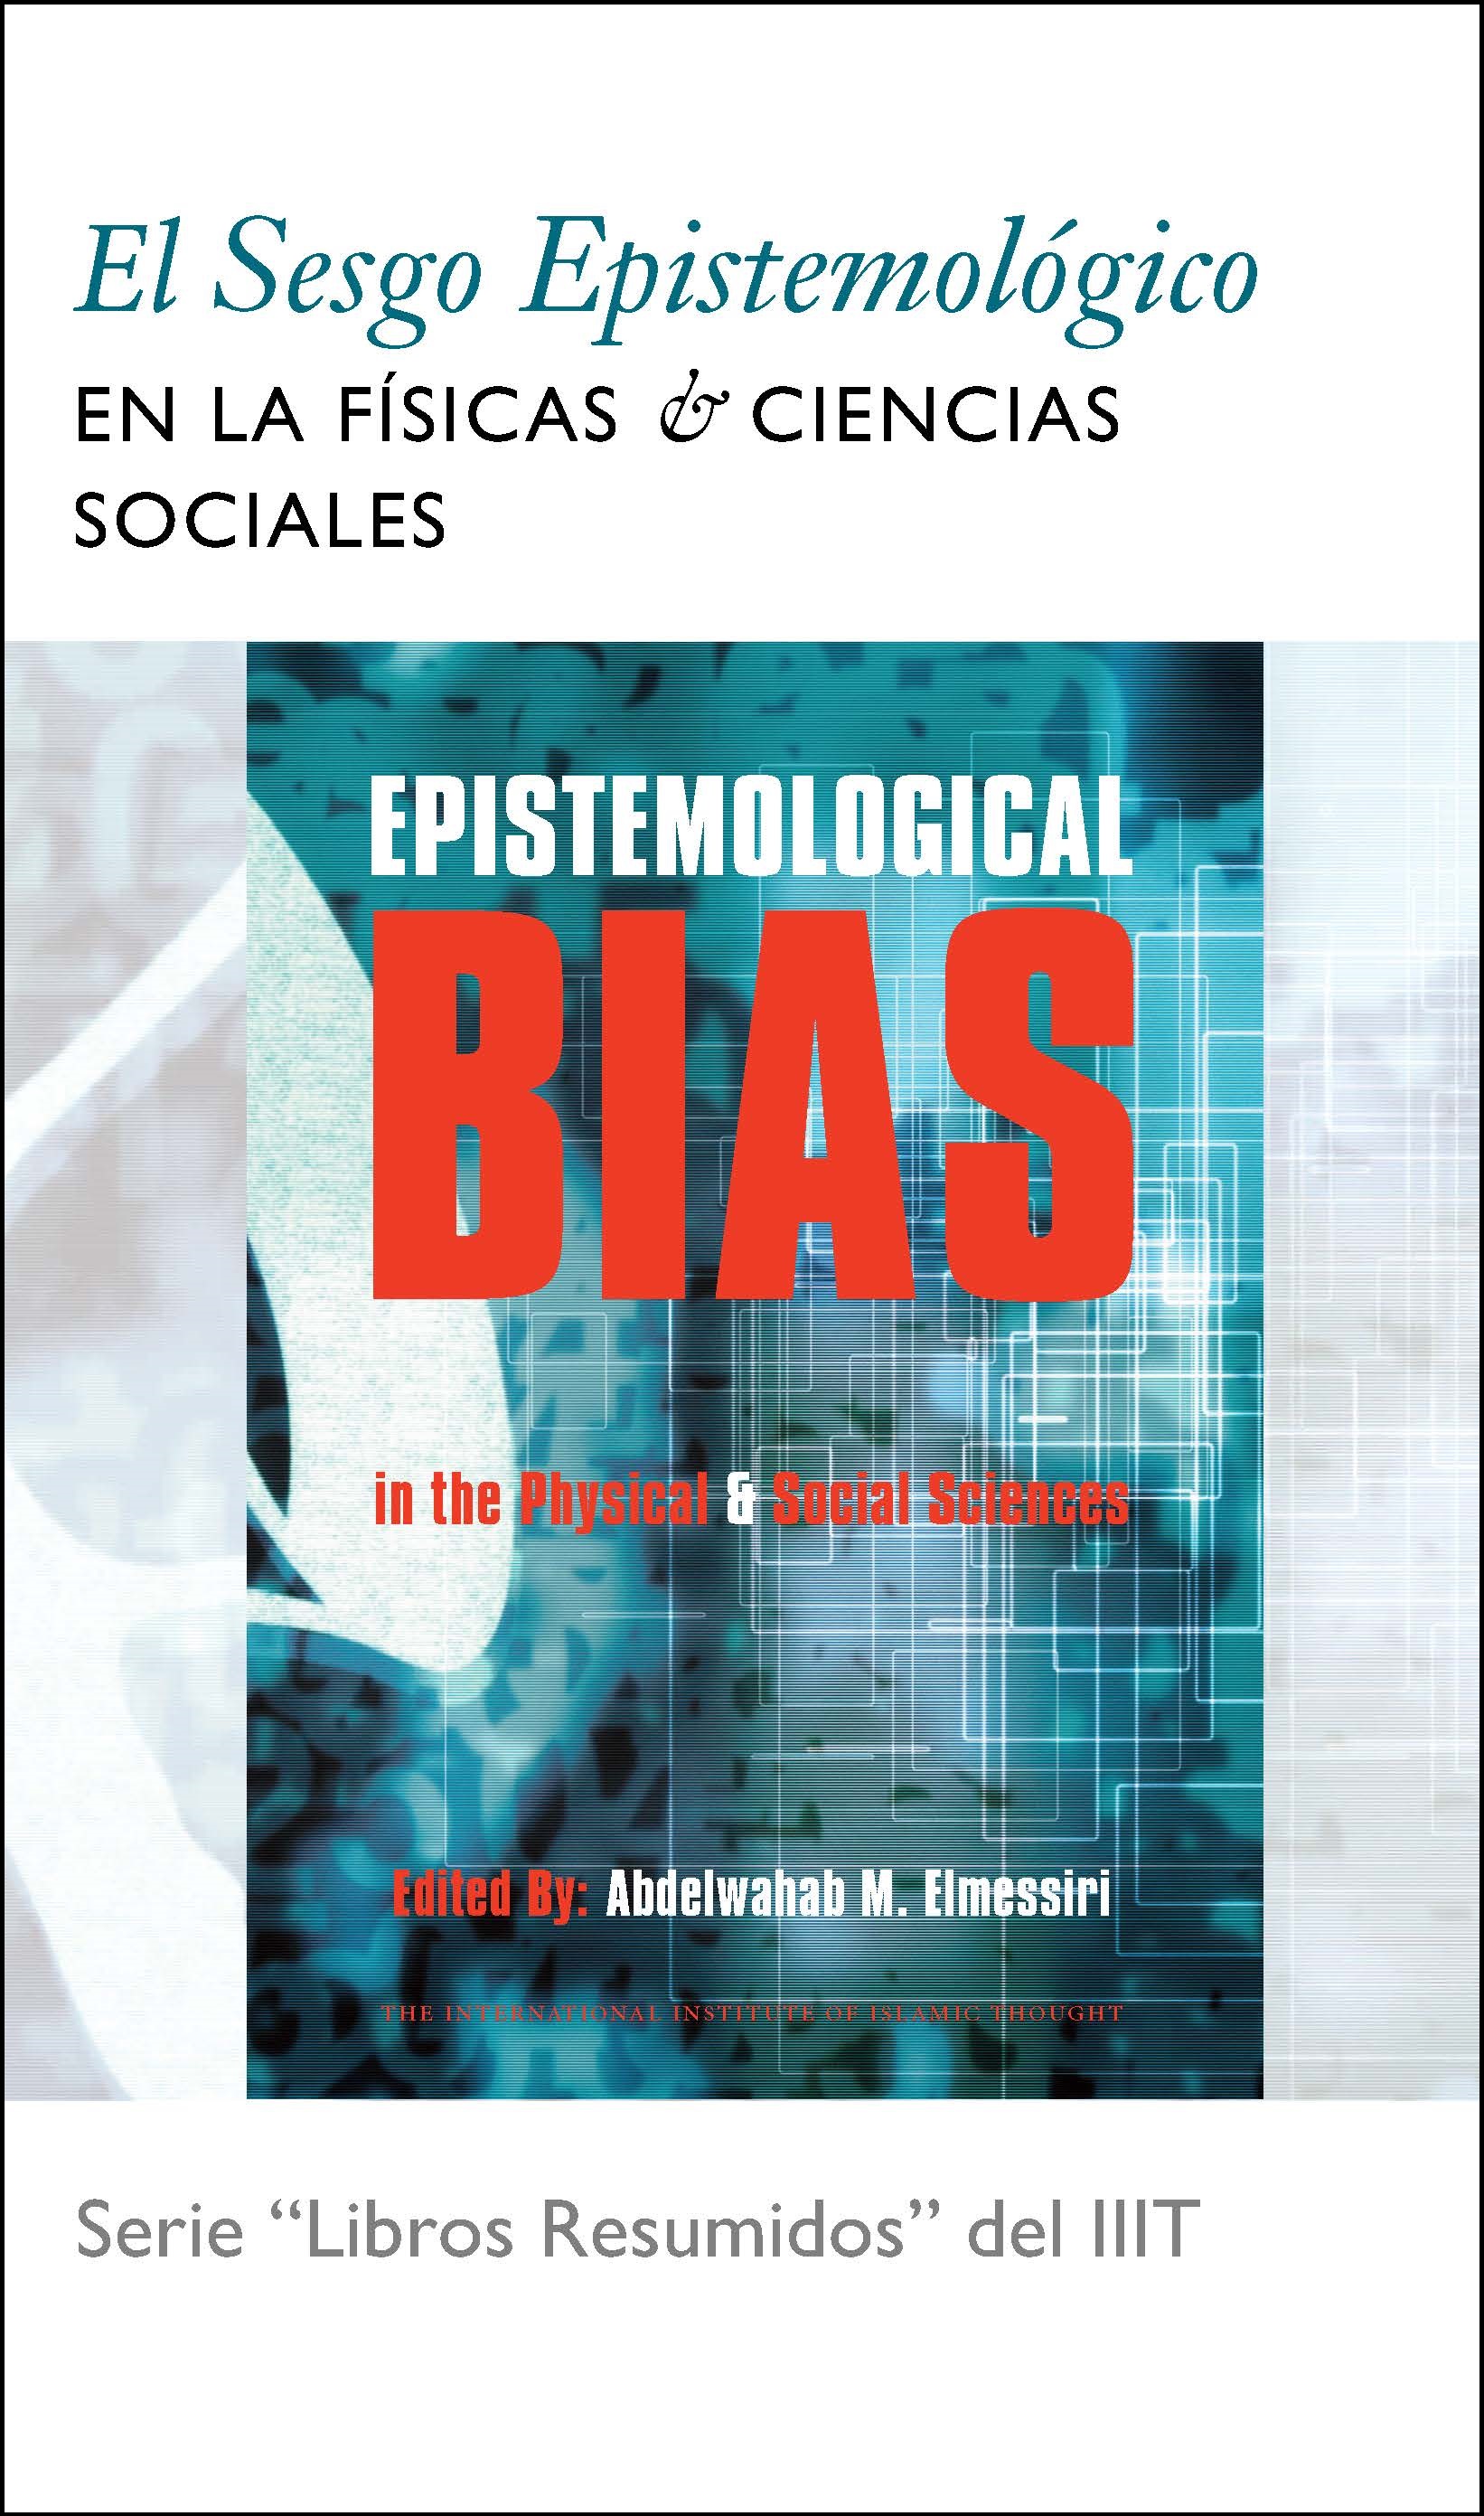 Spanish: El Sesgo Epistemológico en la Física y las Ciencias Sociales (Book-in-Brief: Epistemological Bias in the Physical & Social Sciences)